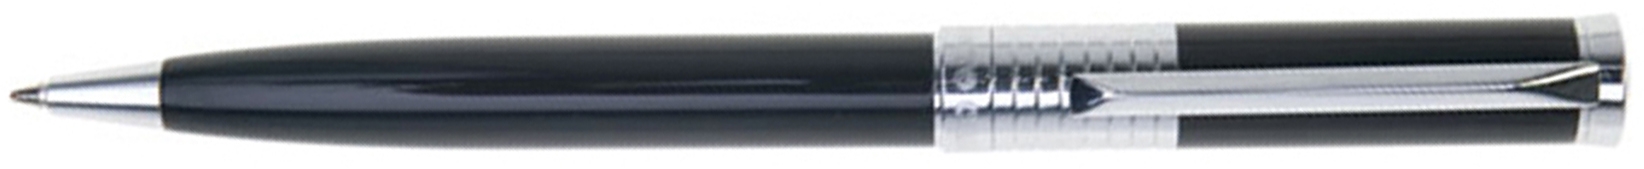 Ручка шариковая Pierre Cardin EVOLUTION. Цвет - черный. Упаковка В., черный, латунь